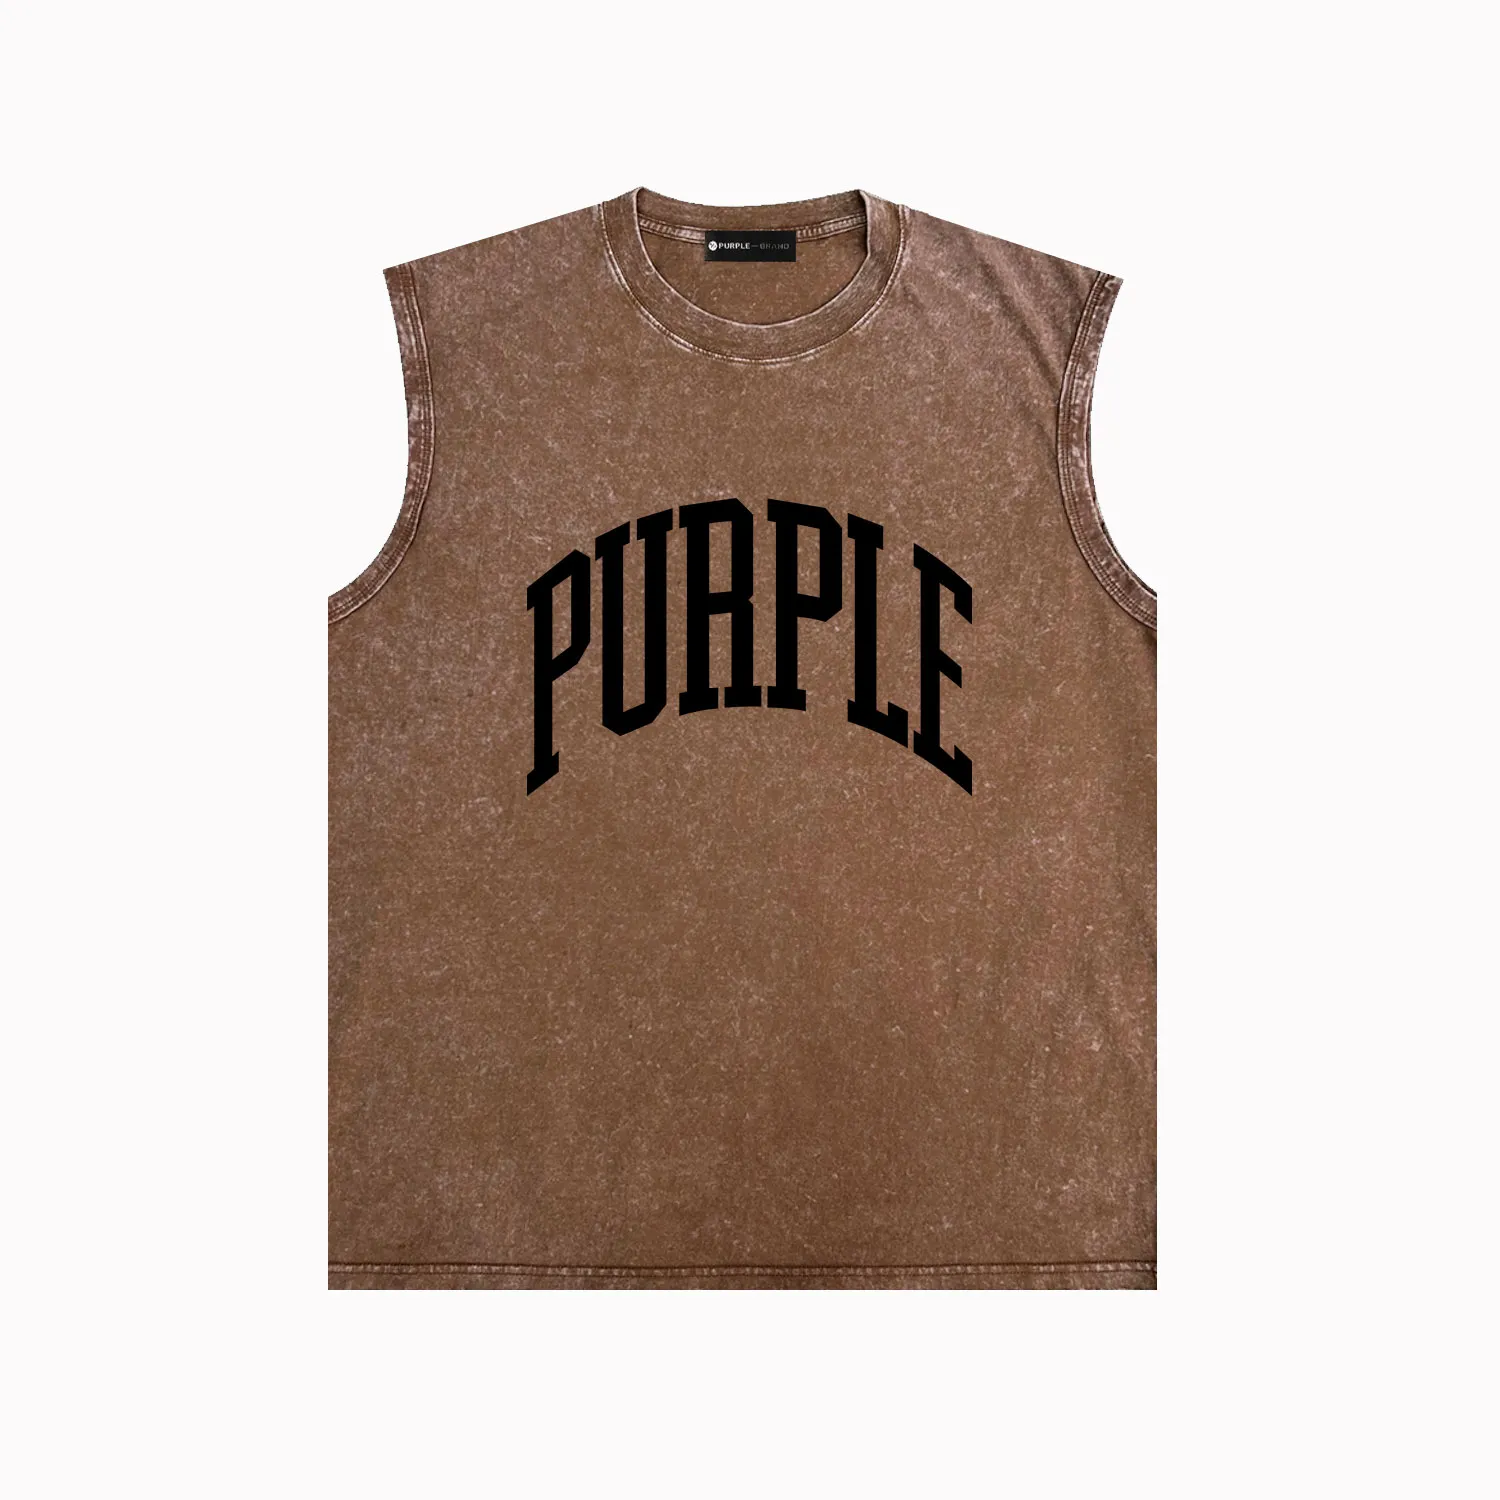 purple vest mens designer t shirt trendy brand mens tank tops ZJBPUR078B indented lettering made old printed vest ZJBPUR079 Solid color curved letters printed vest